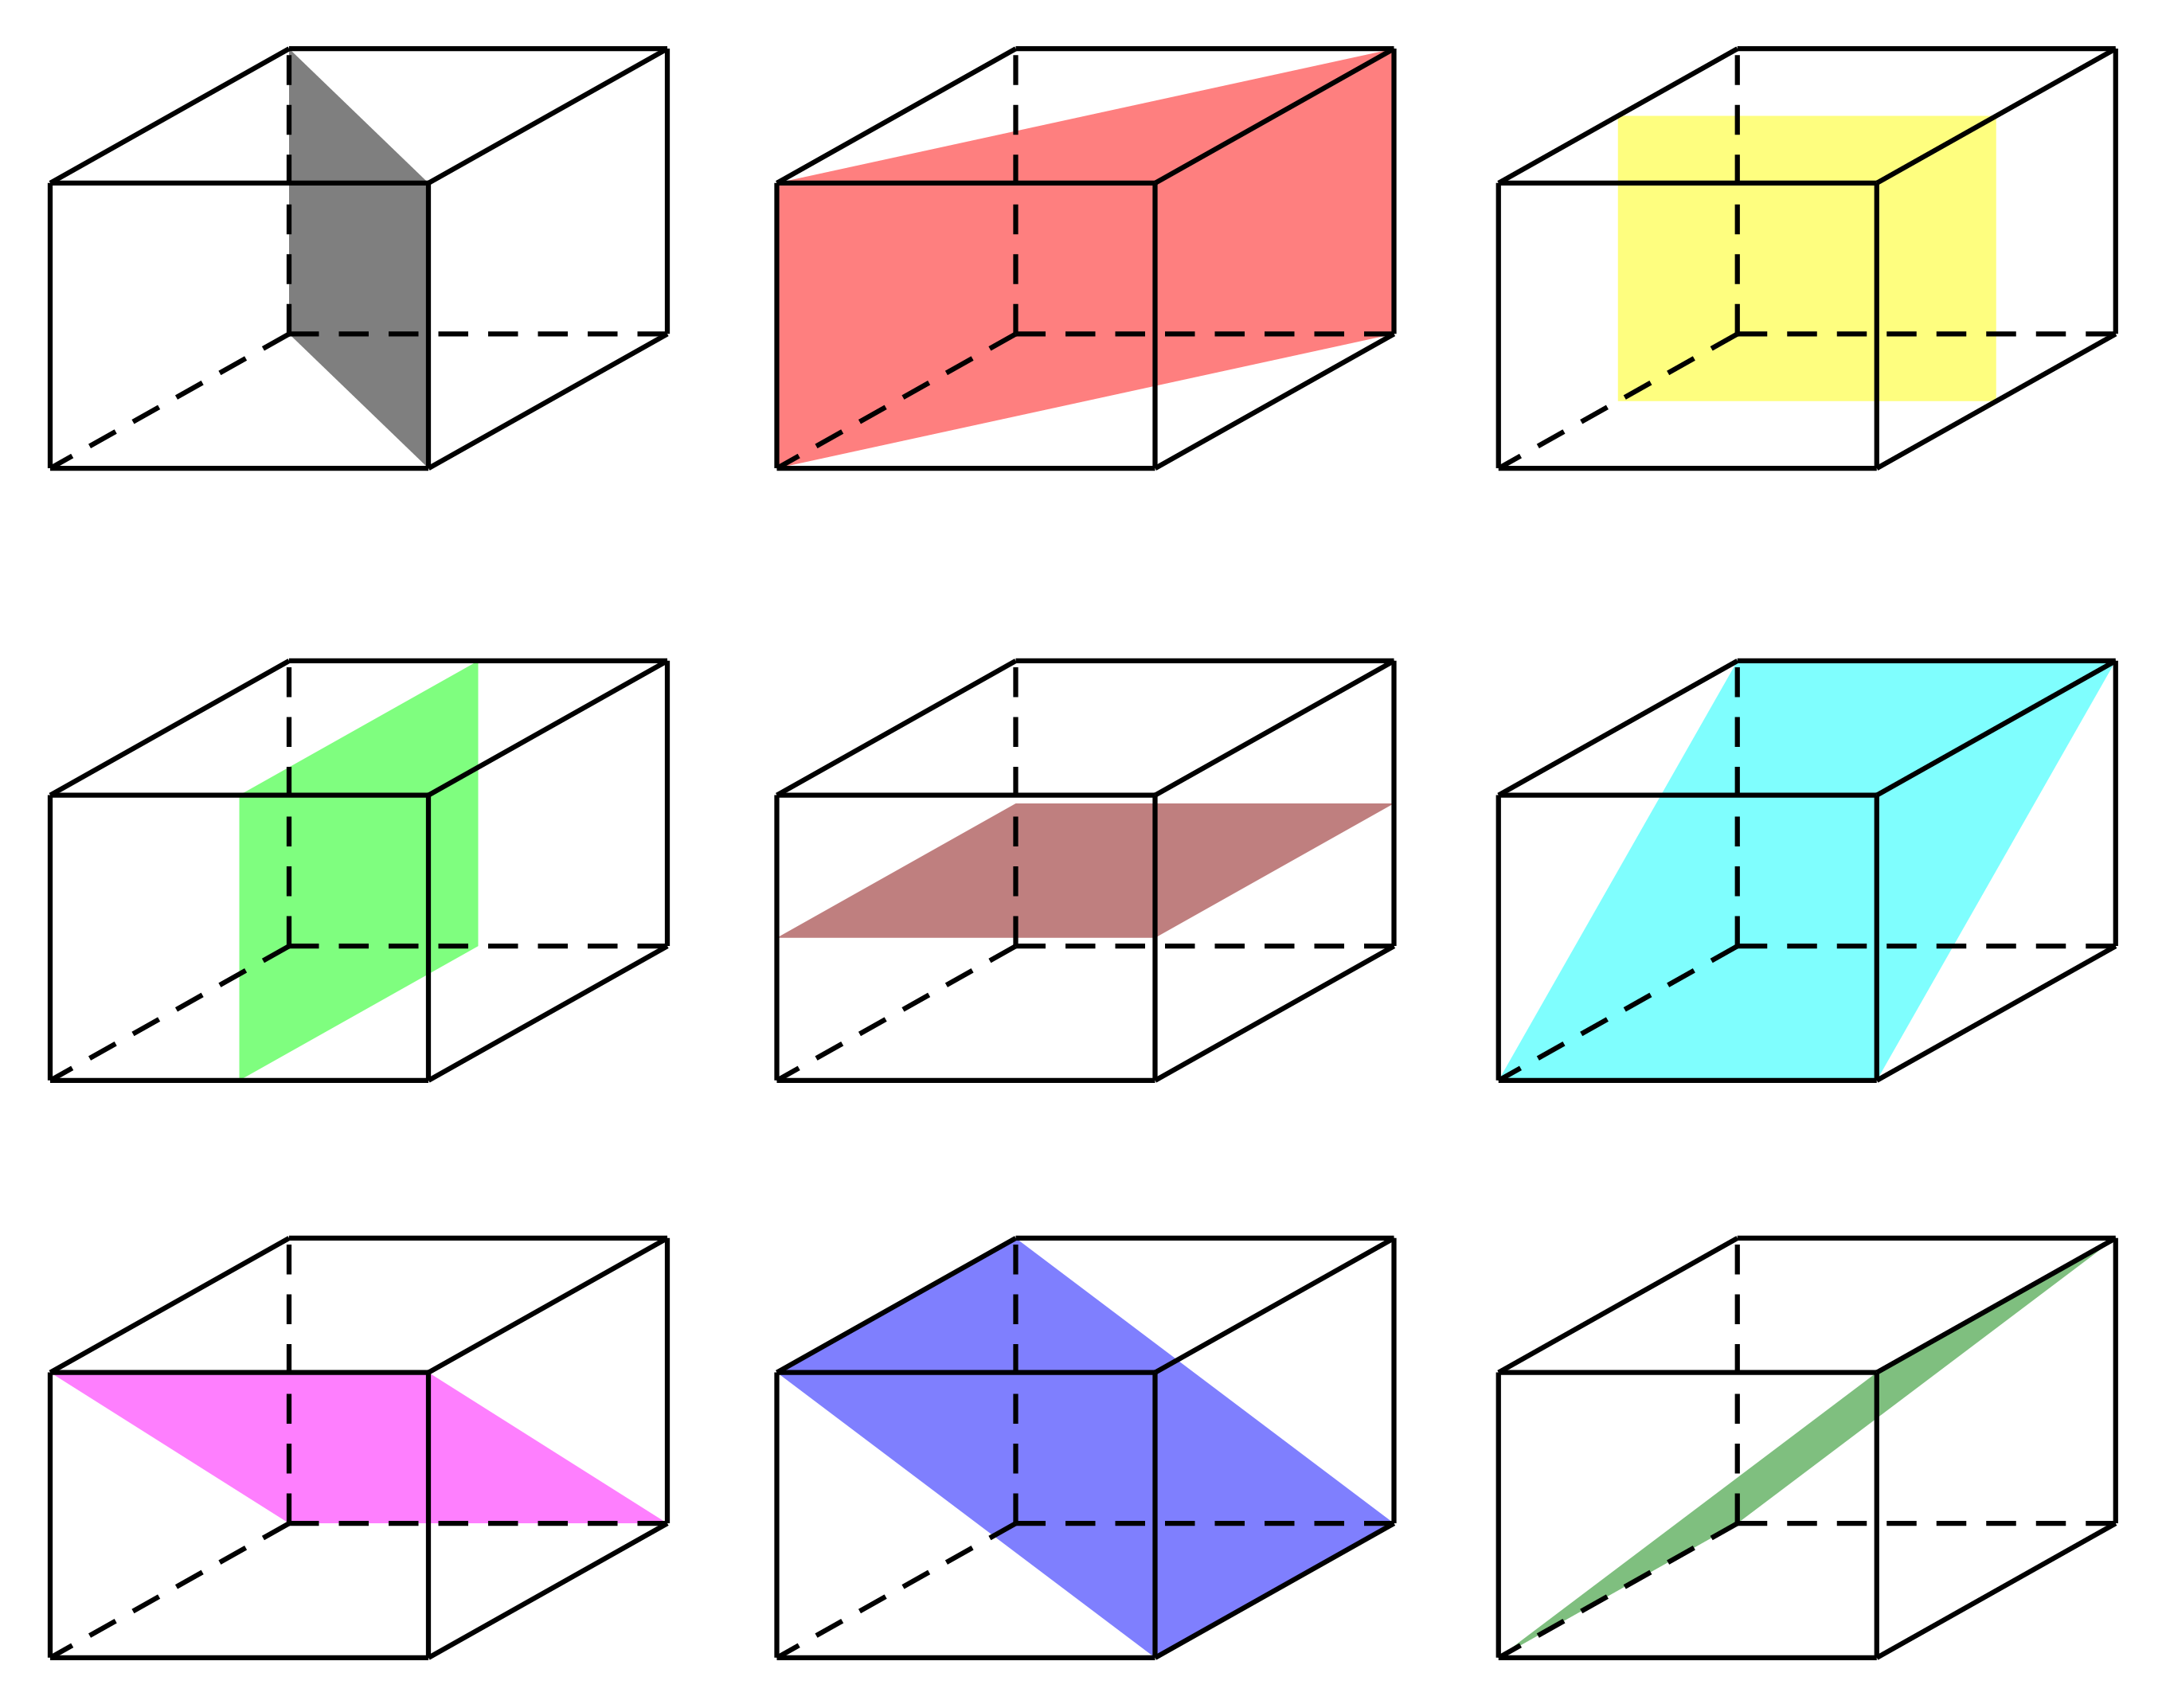 số mặt phẳng đối xứng của hình lập phương